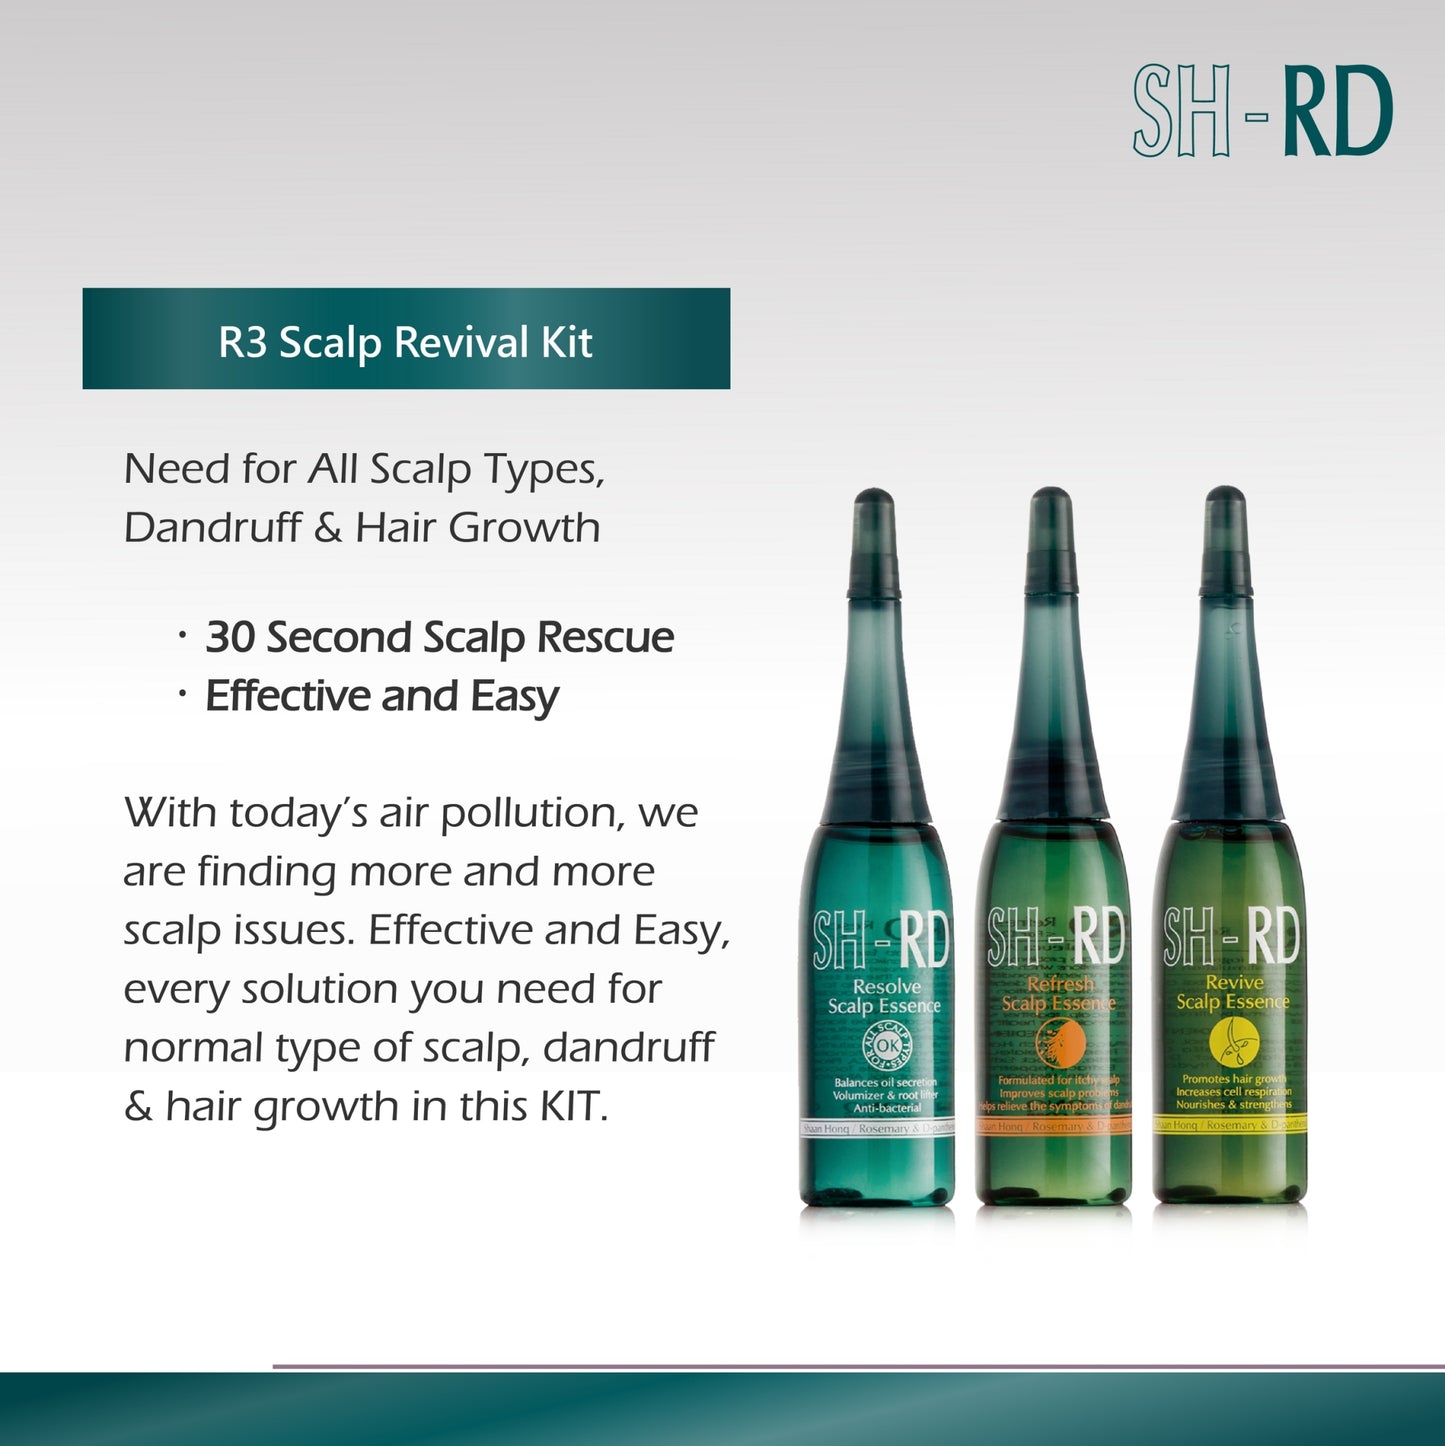 SH-RD Scalp Revival Kit